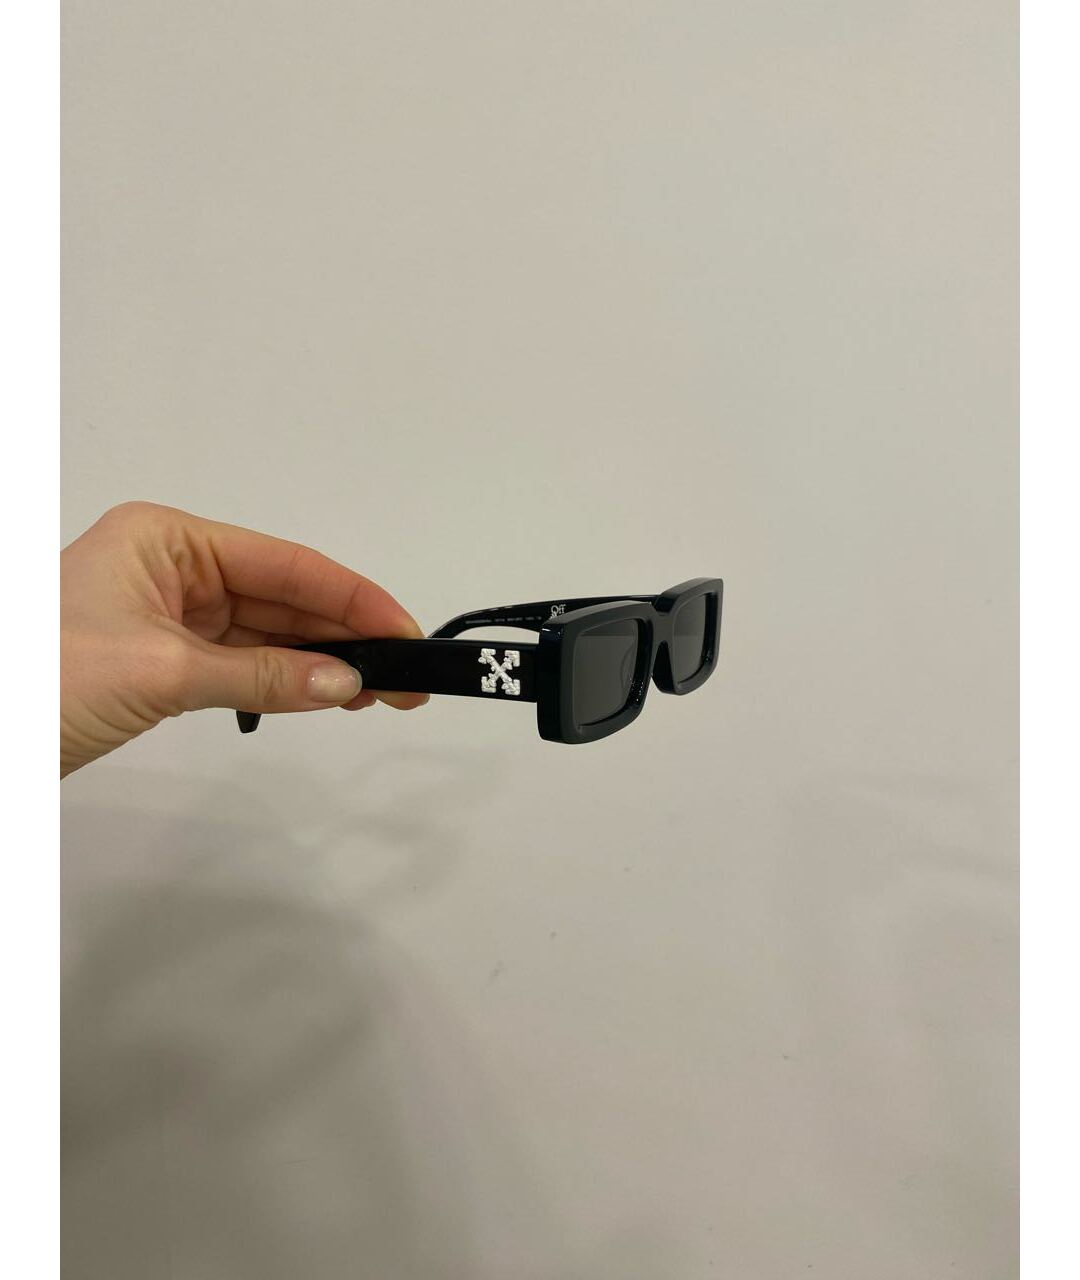 OFF-WHITE Черные пластиковые солнцезащитные очки, фото 2